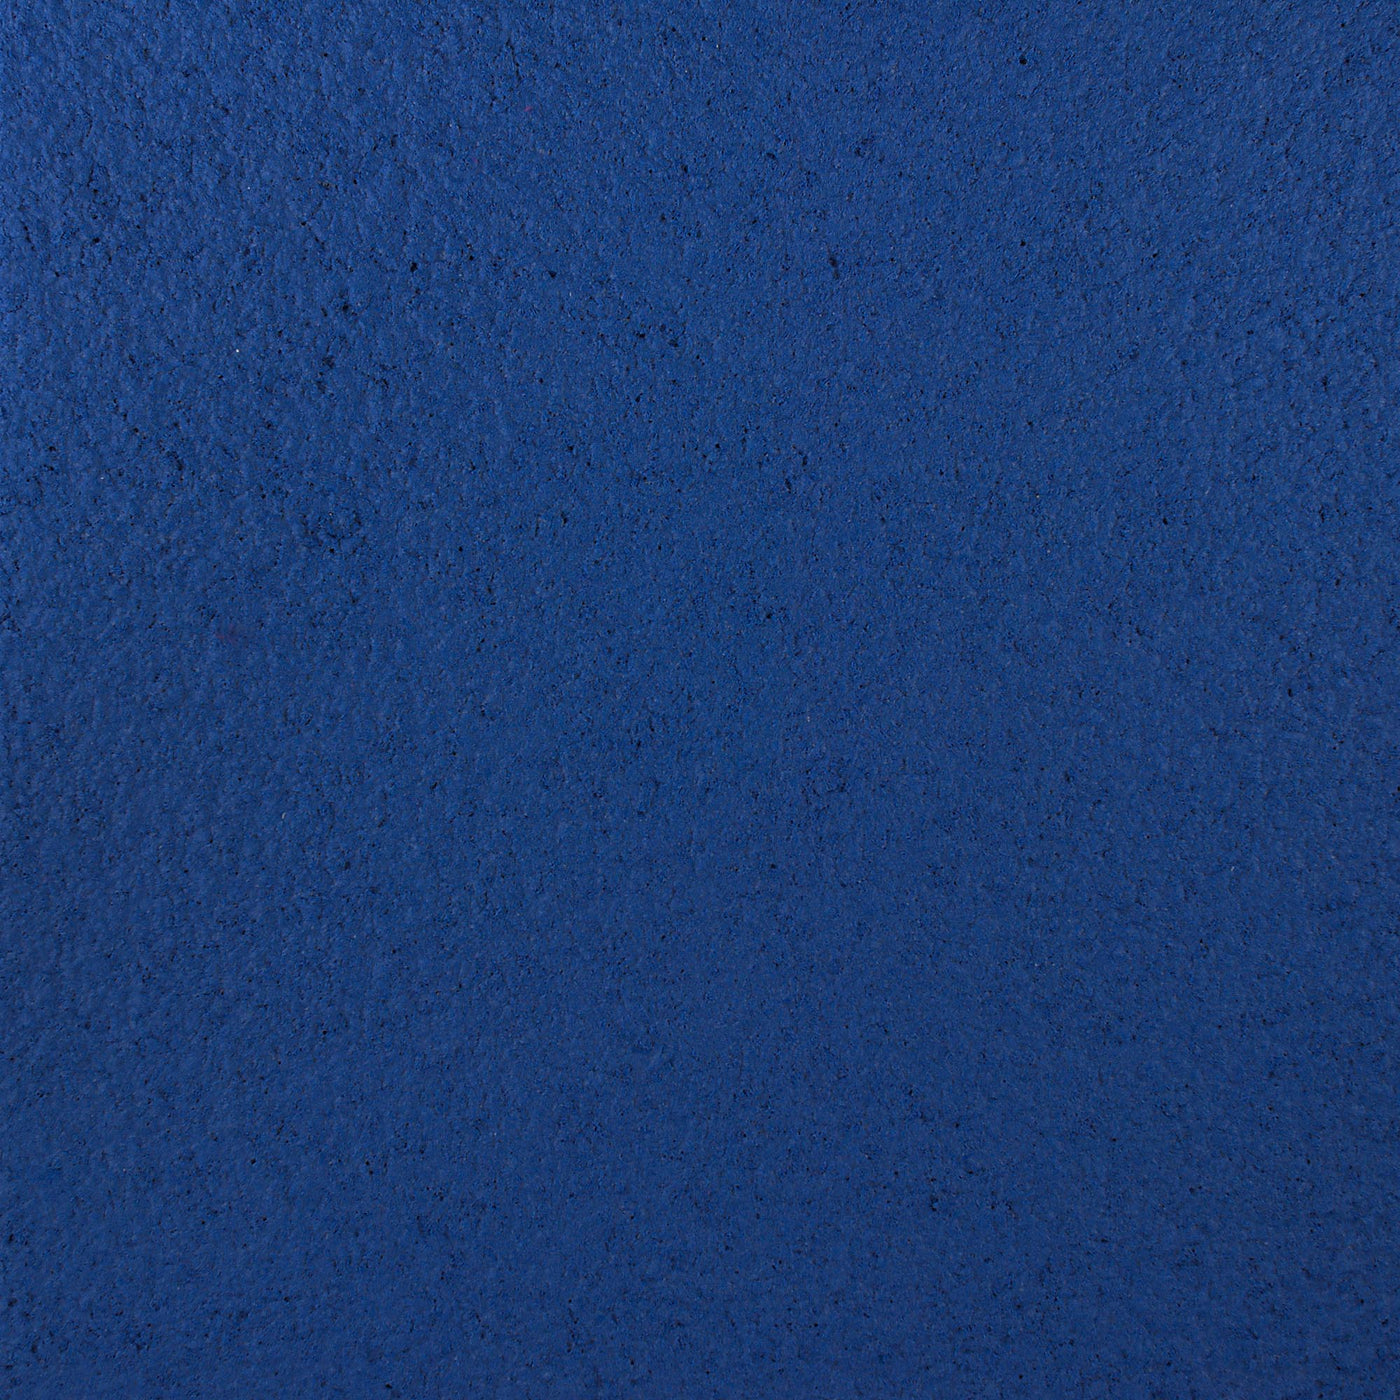 Cotton plaster color decor blue